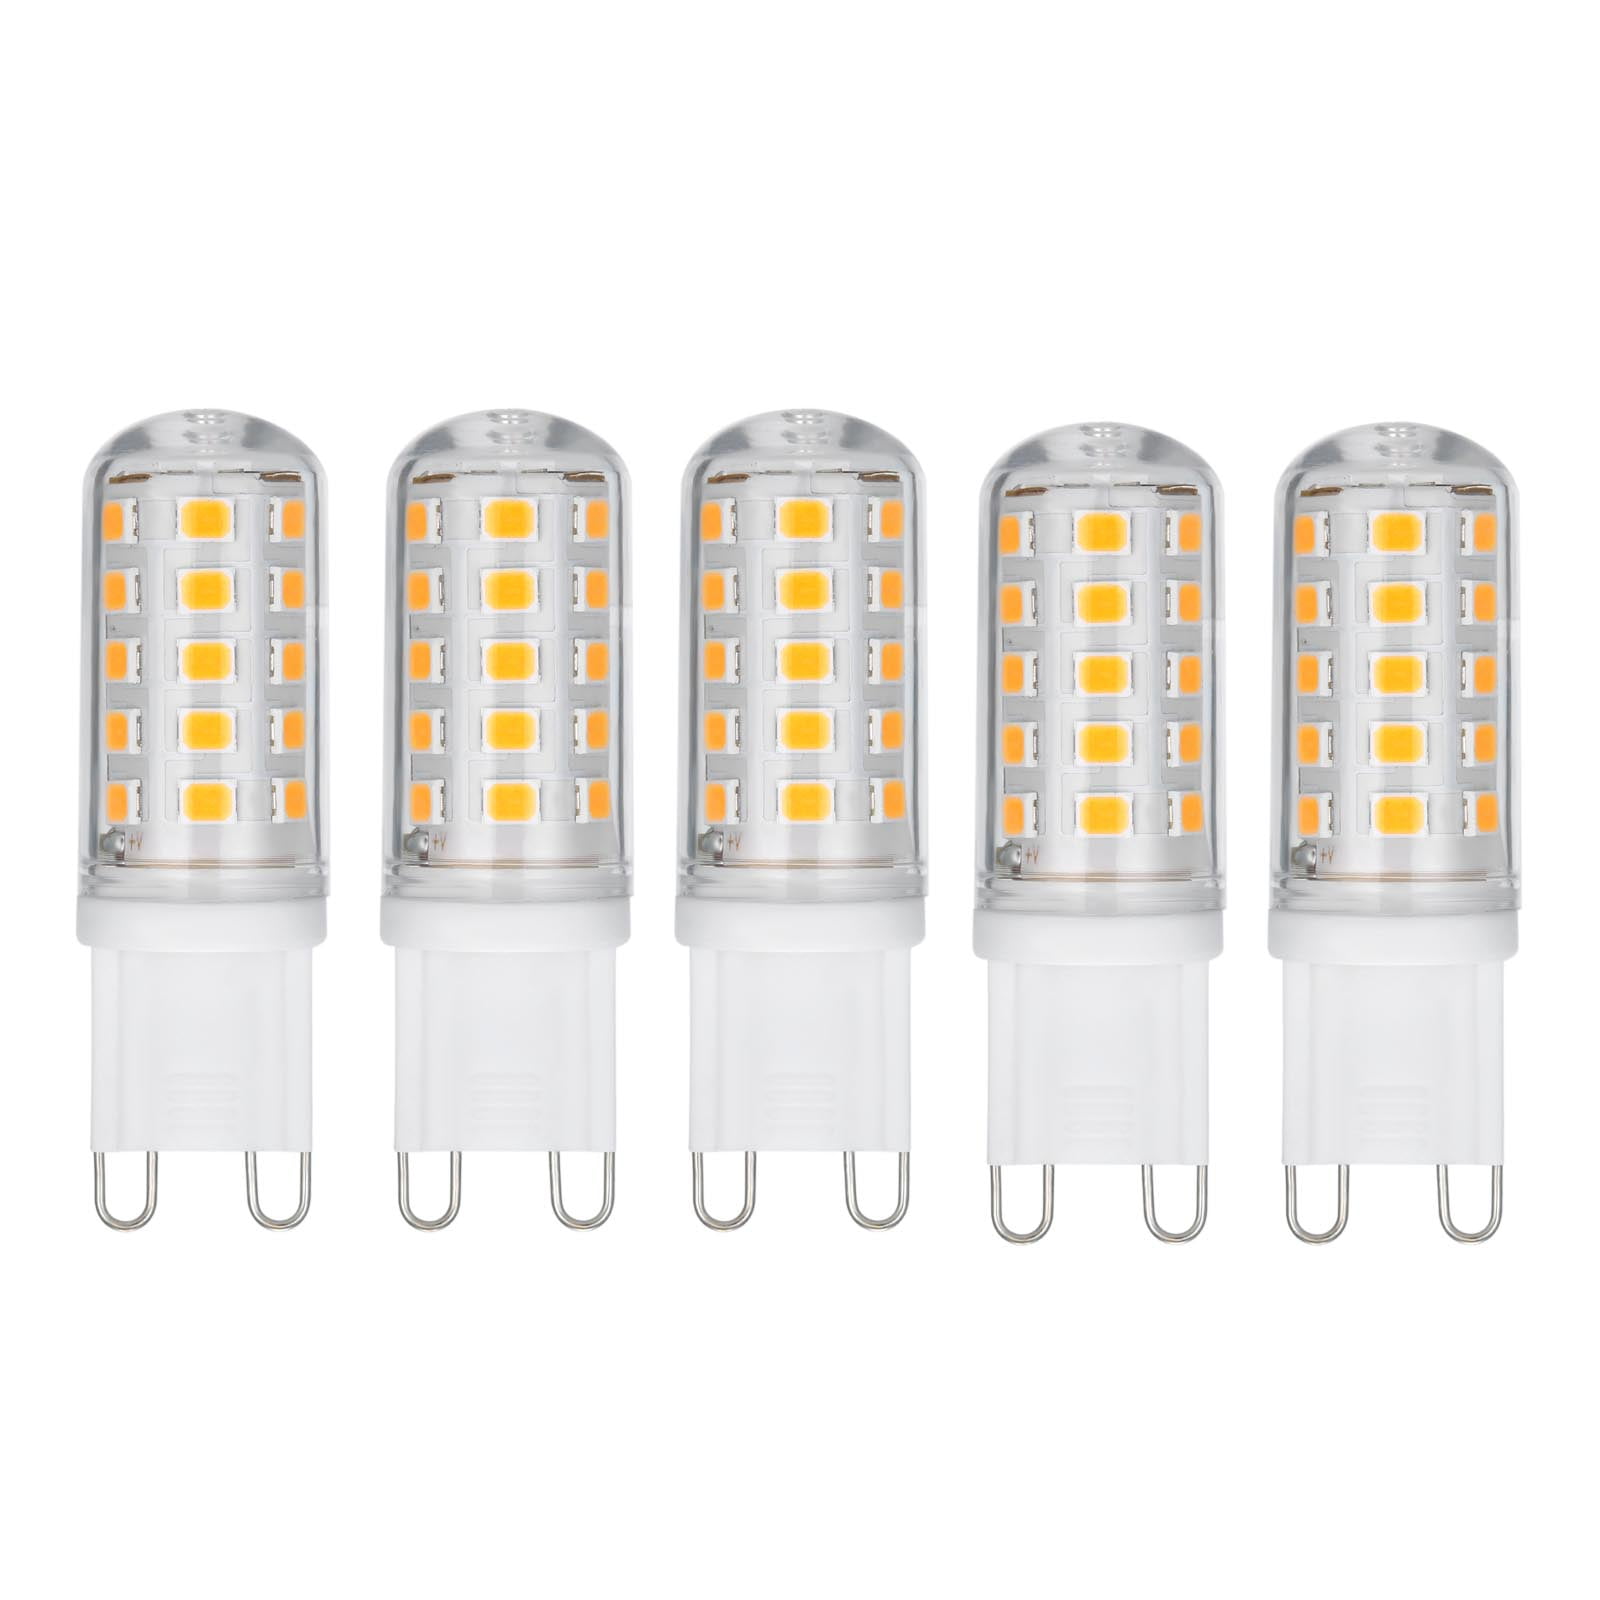 HUBINGRONG G9 Led Lamp Bulb G9 Led Corn Light Bulb G9 Corn Lamp G9 Led 8W COB Chandelier Lighting 200-240V 5-Pack Color : Cool Whtie